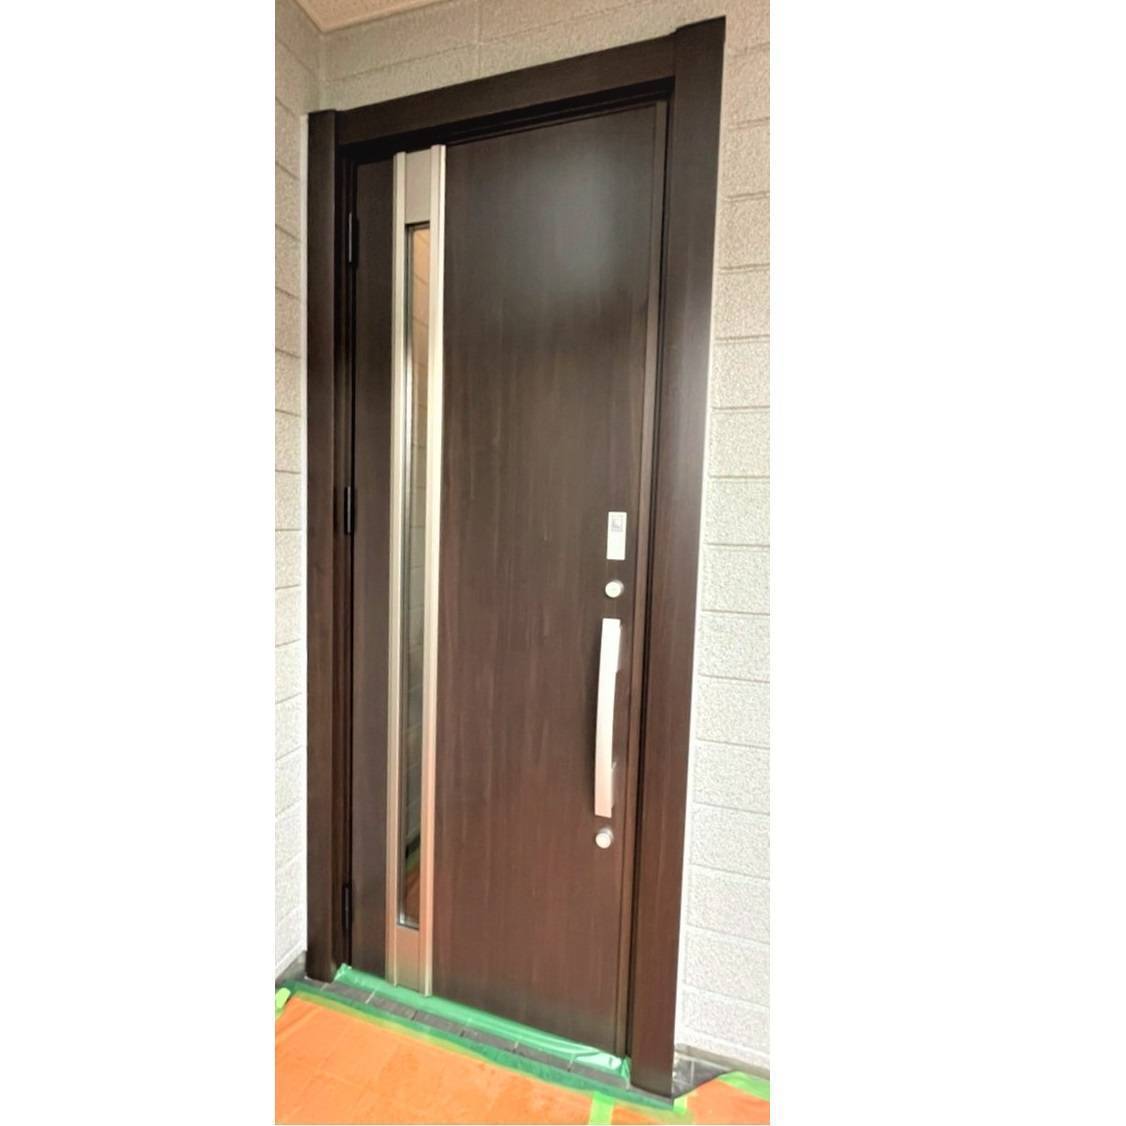 窓工房テラムラのおしゃれな木目調の玄関ドアに交換したいの施工後の写真1